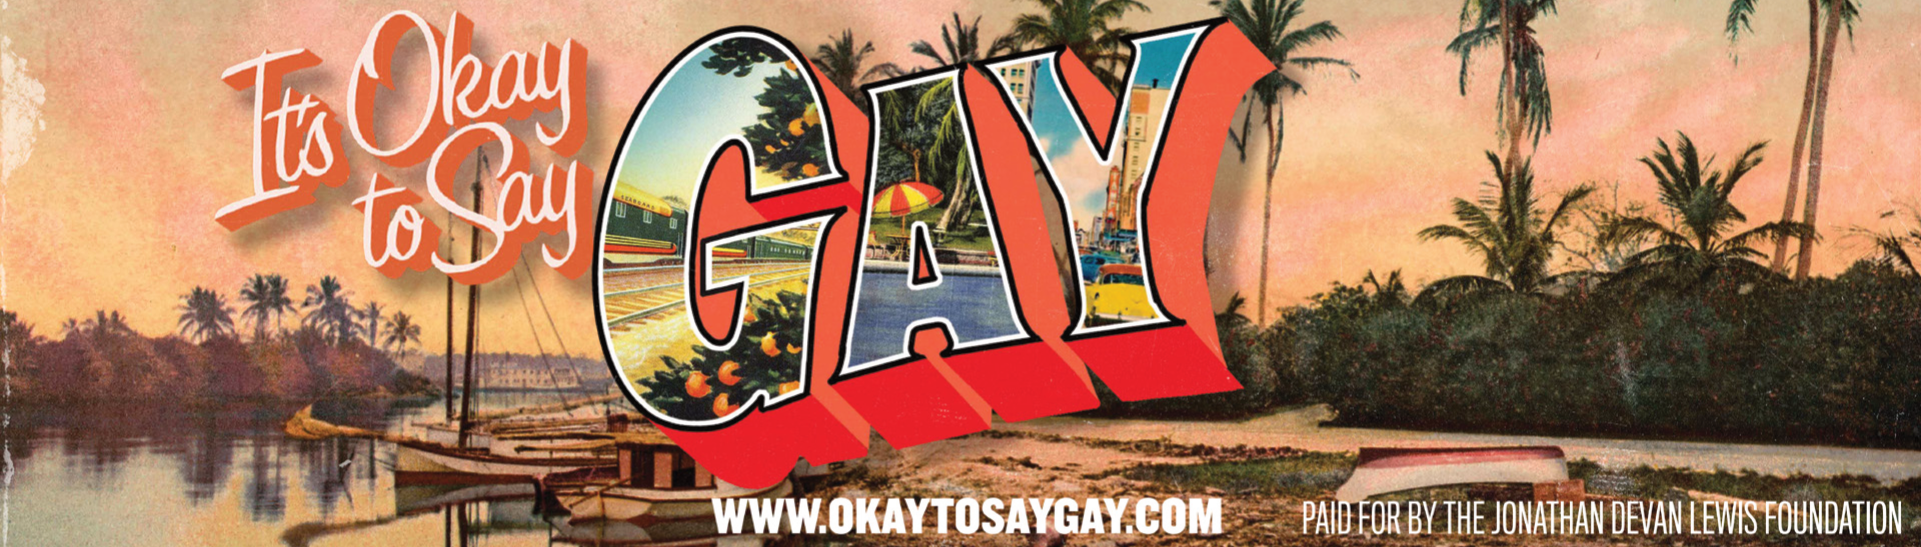 Okay to Say Gay billboards